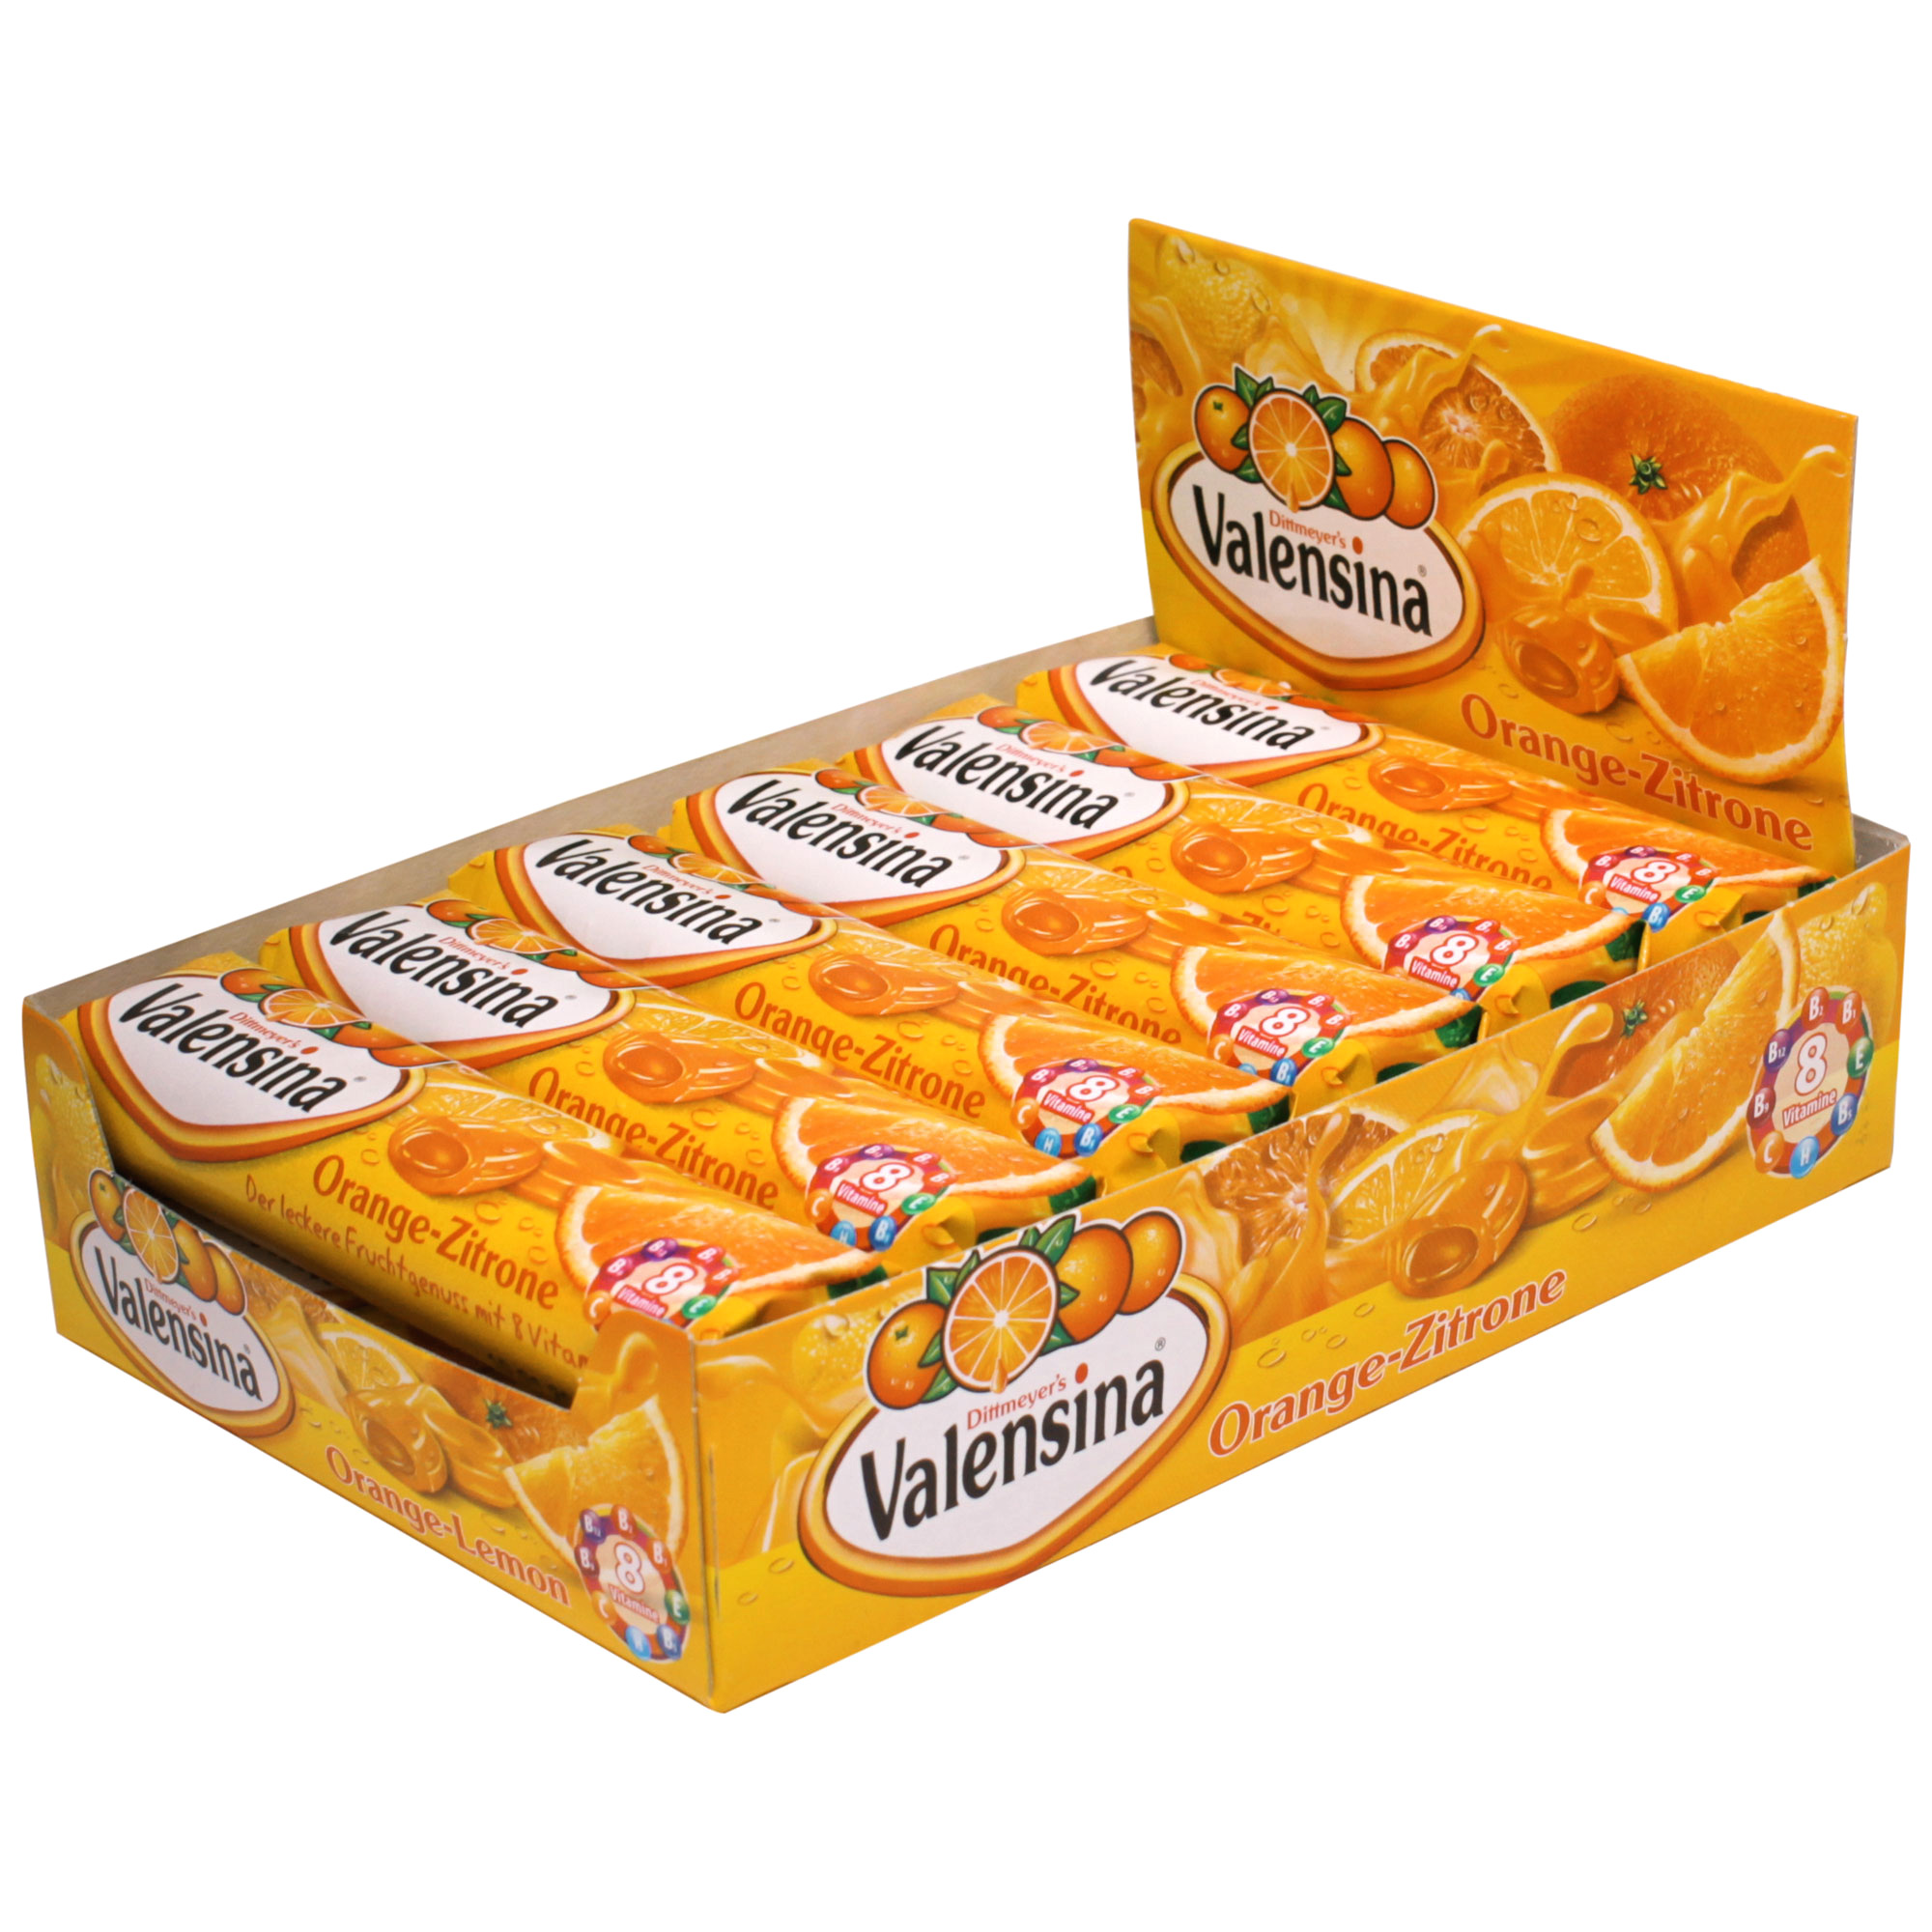 Valensina Orange-Zitrone 12x8er | Online kaufen im World of Sweets Shop